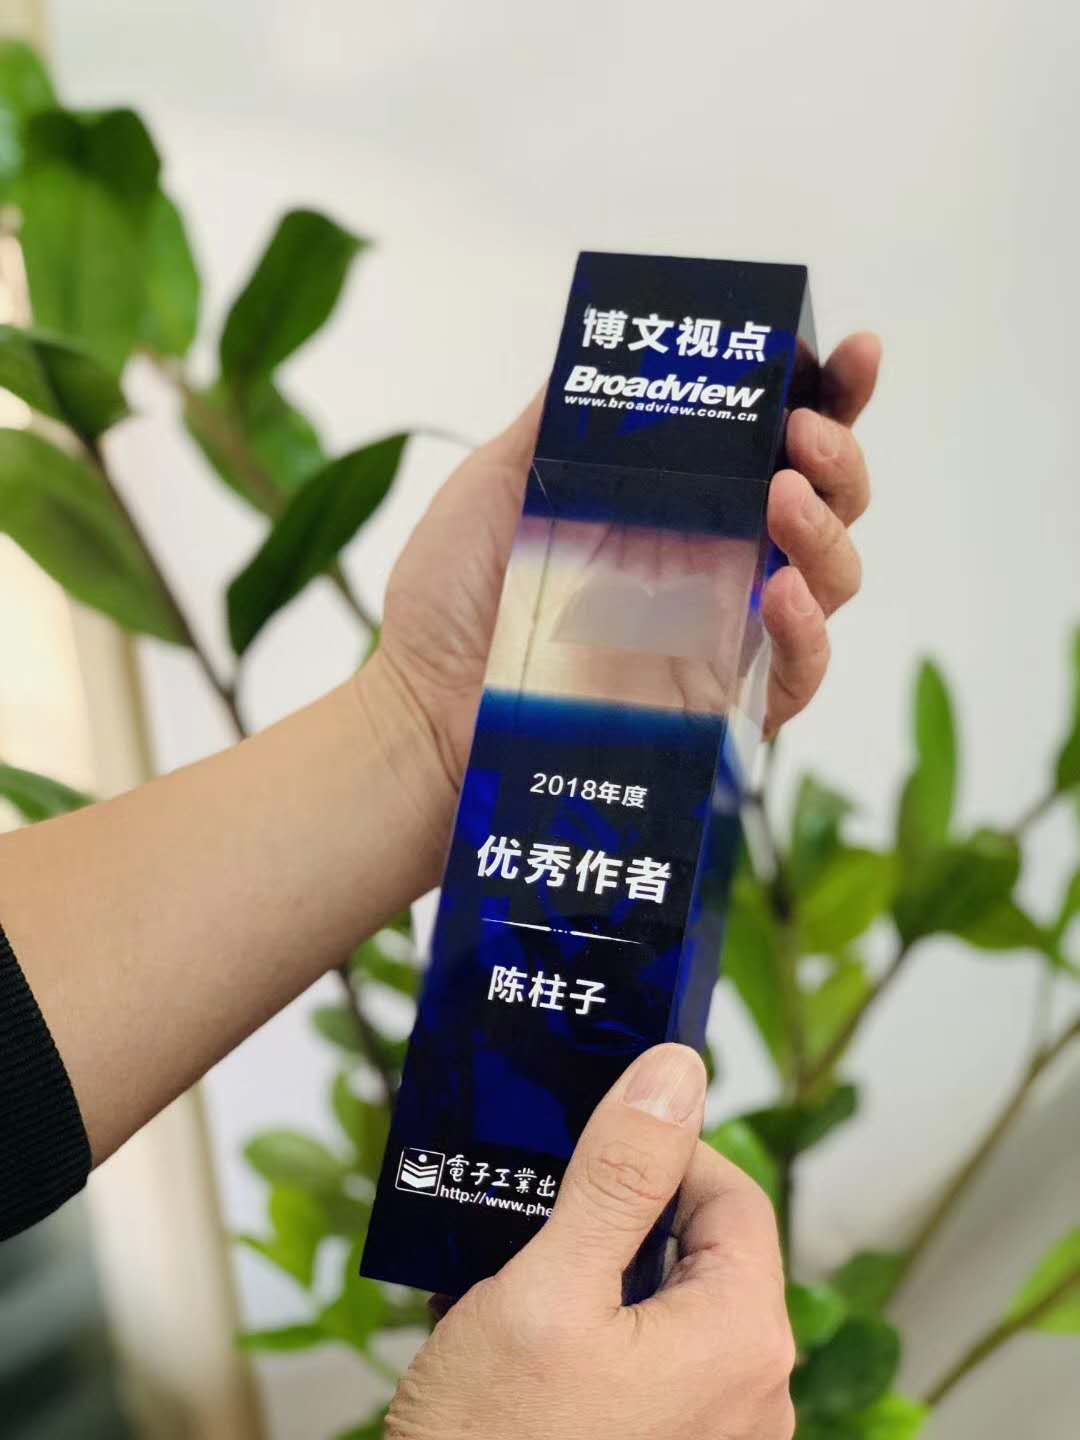 陈柱子被电子工业出版社博文视点评为2018年度优秀作者